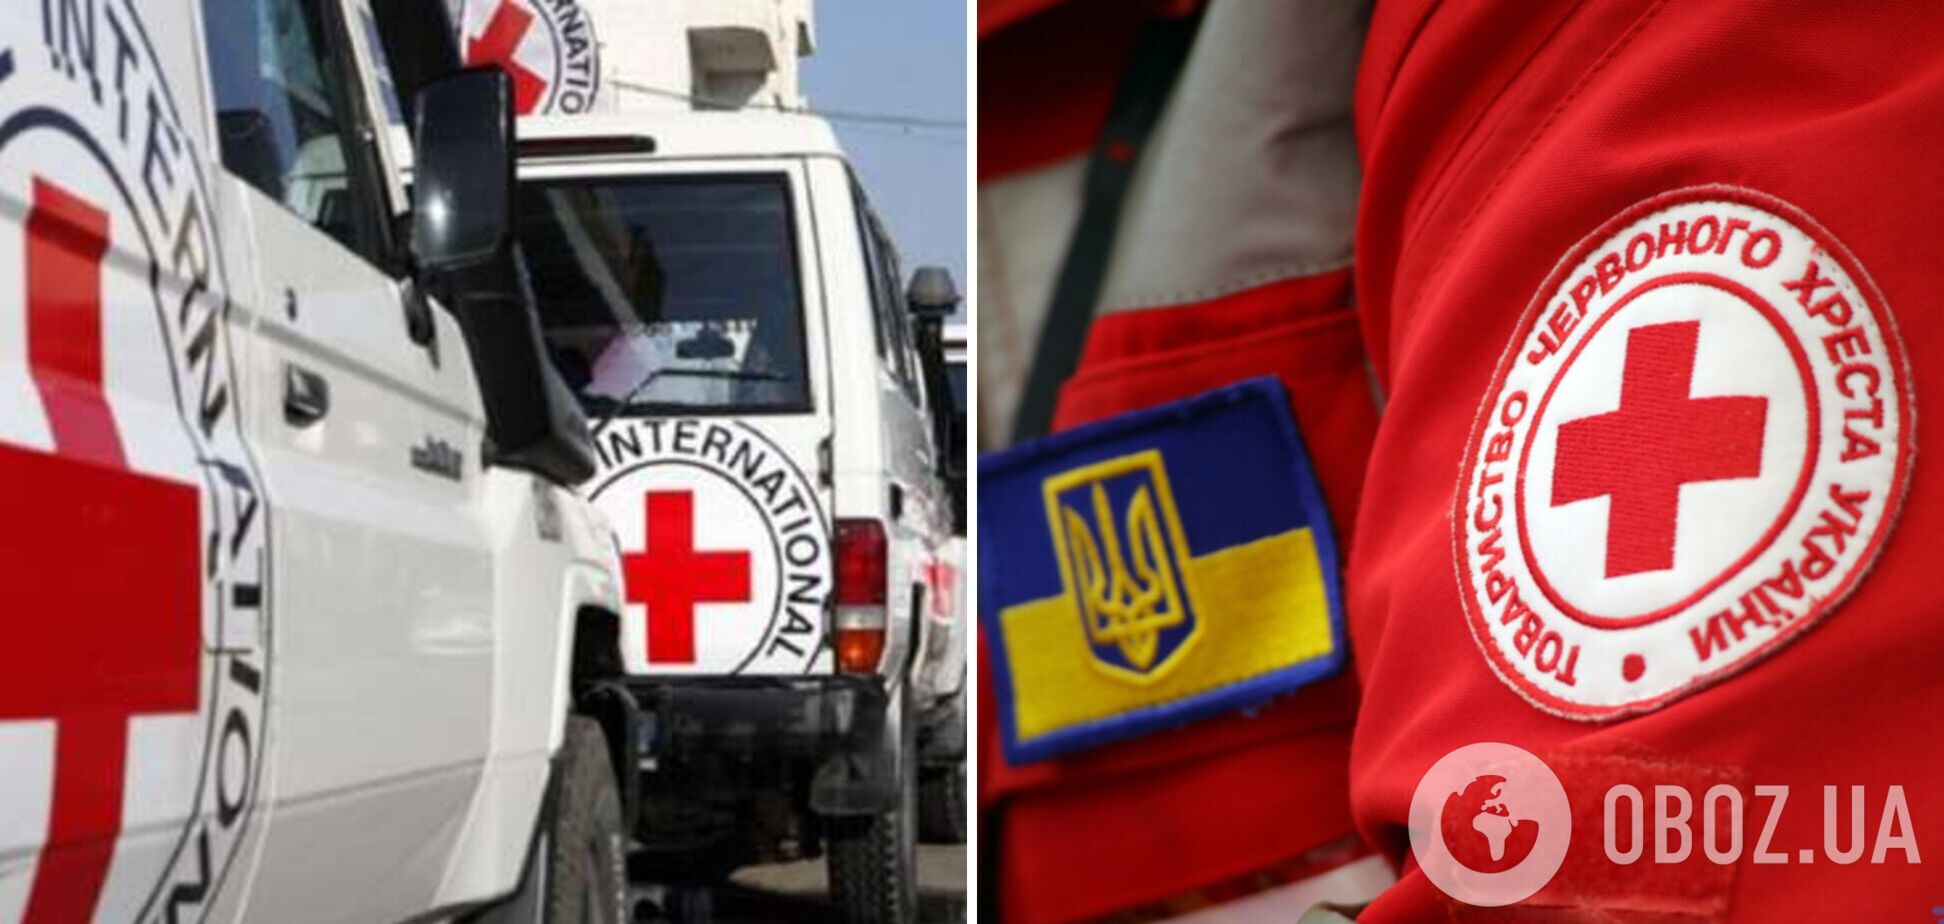 Отделение Красного Креста в Донецкой области подверглось удару. Фото